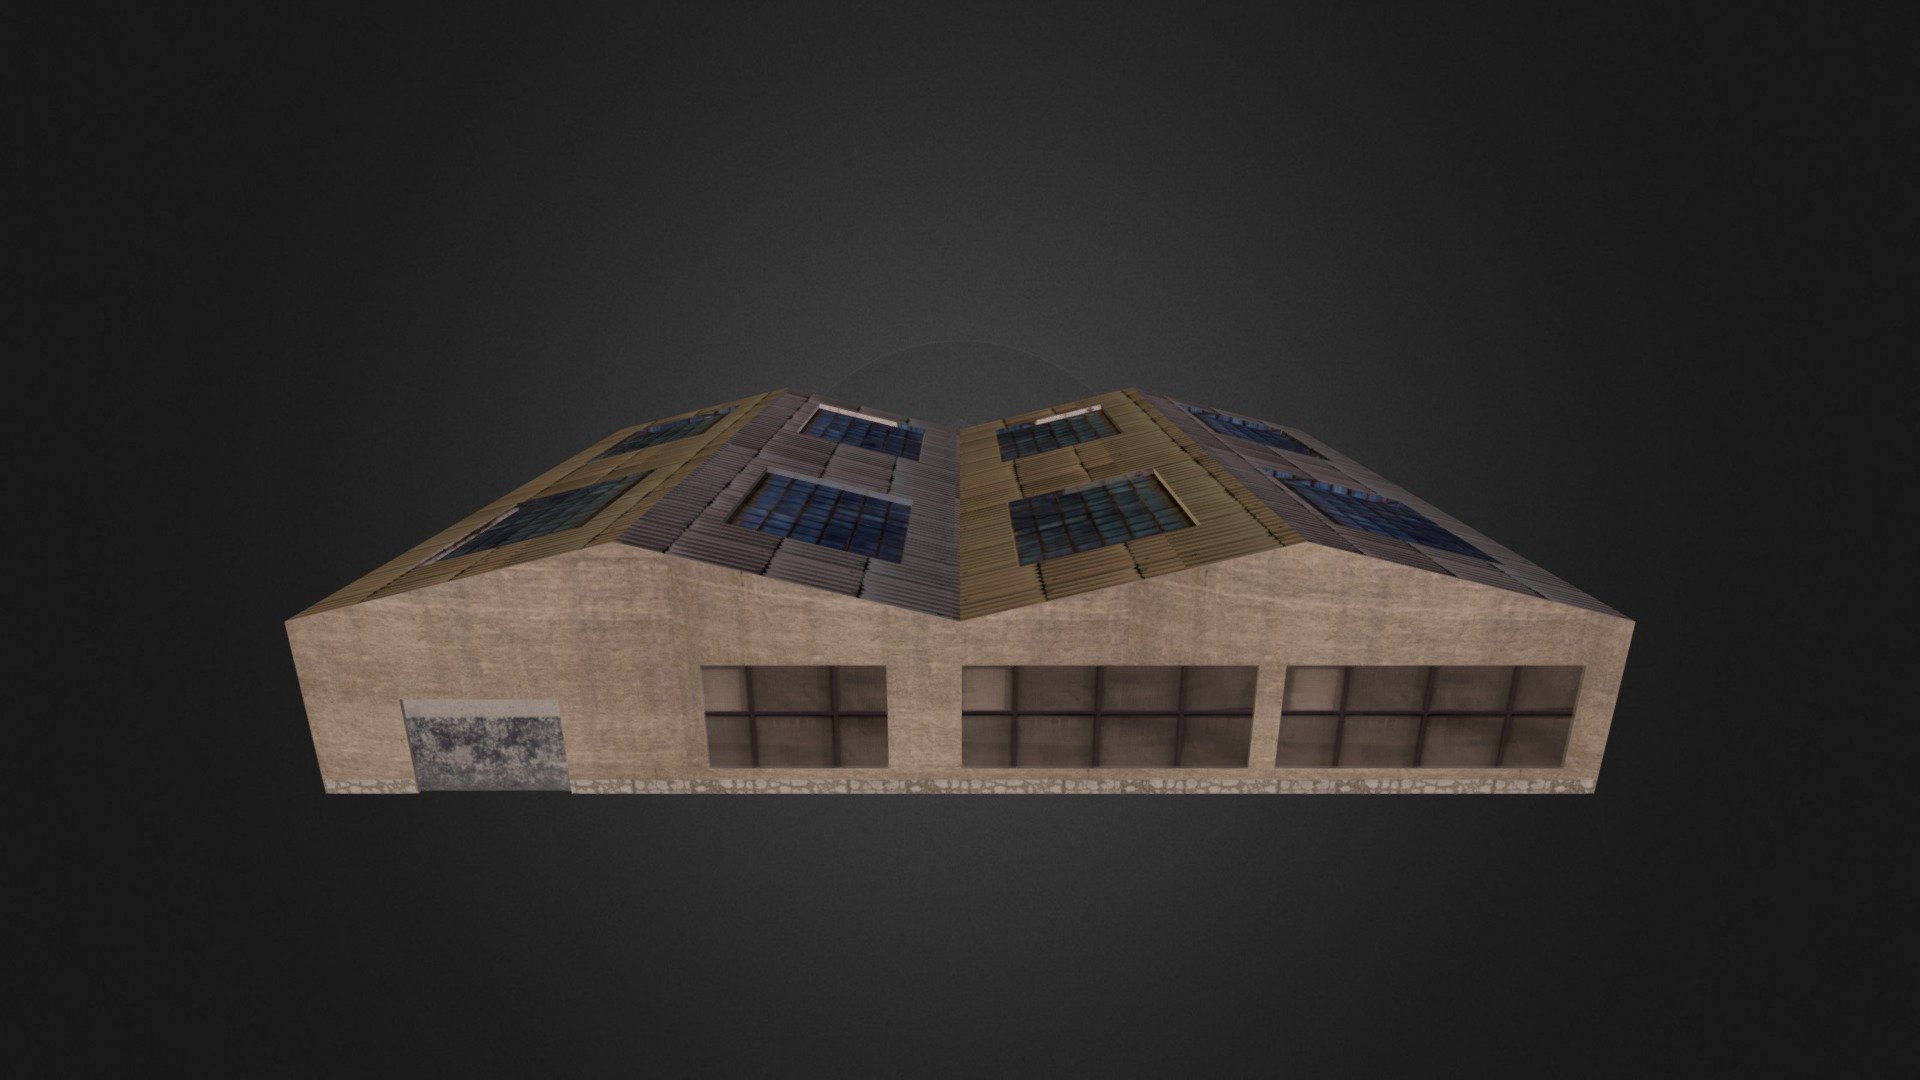 Military Barrack (Concrete Trim) - 3D model by ageorge1593 3d model